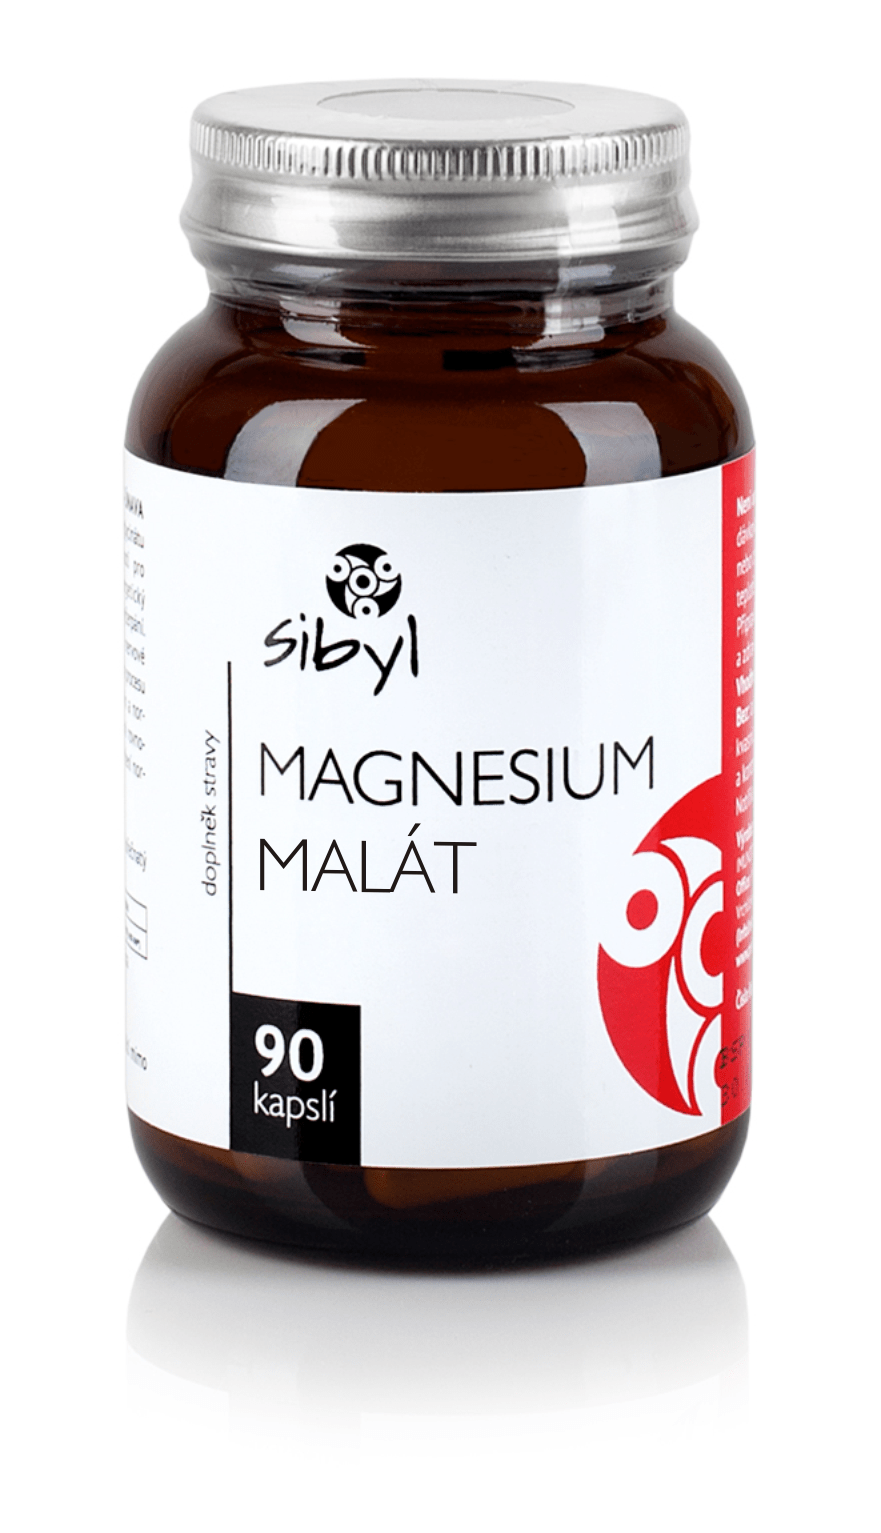 Magnesium malt